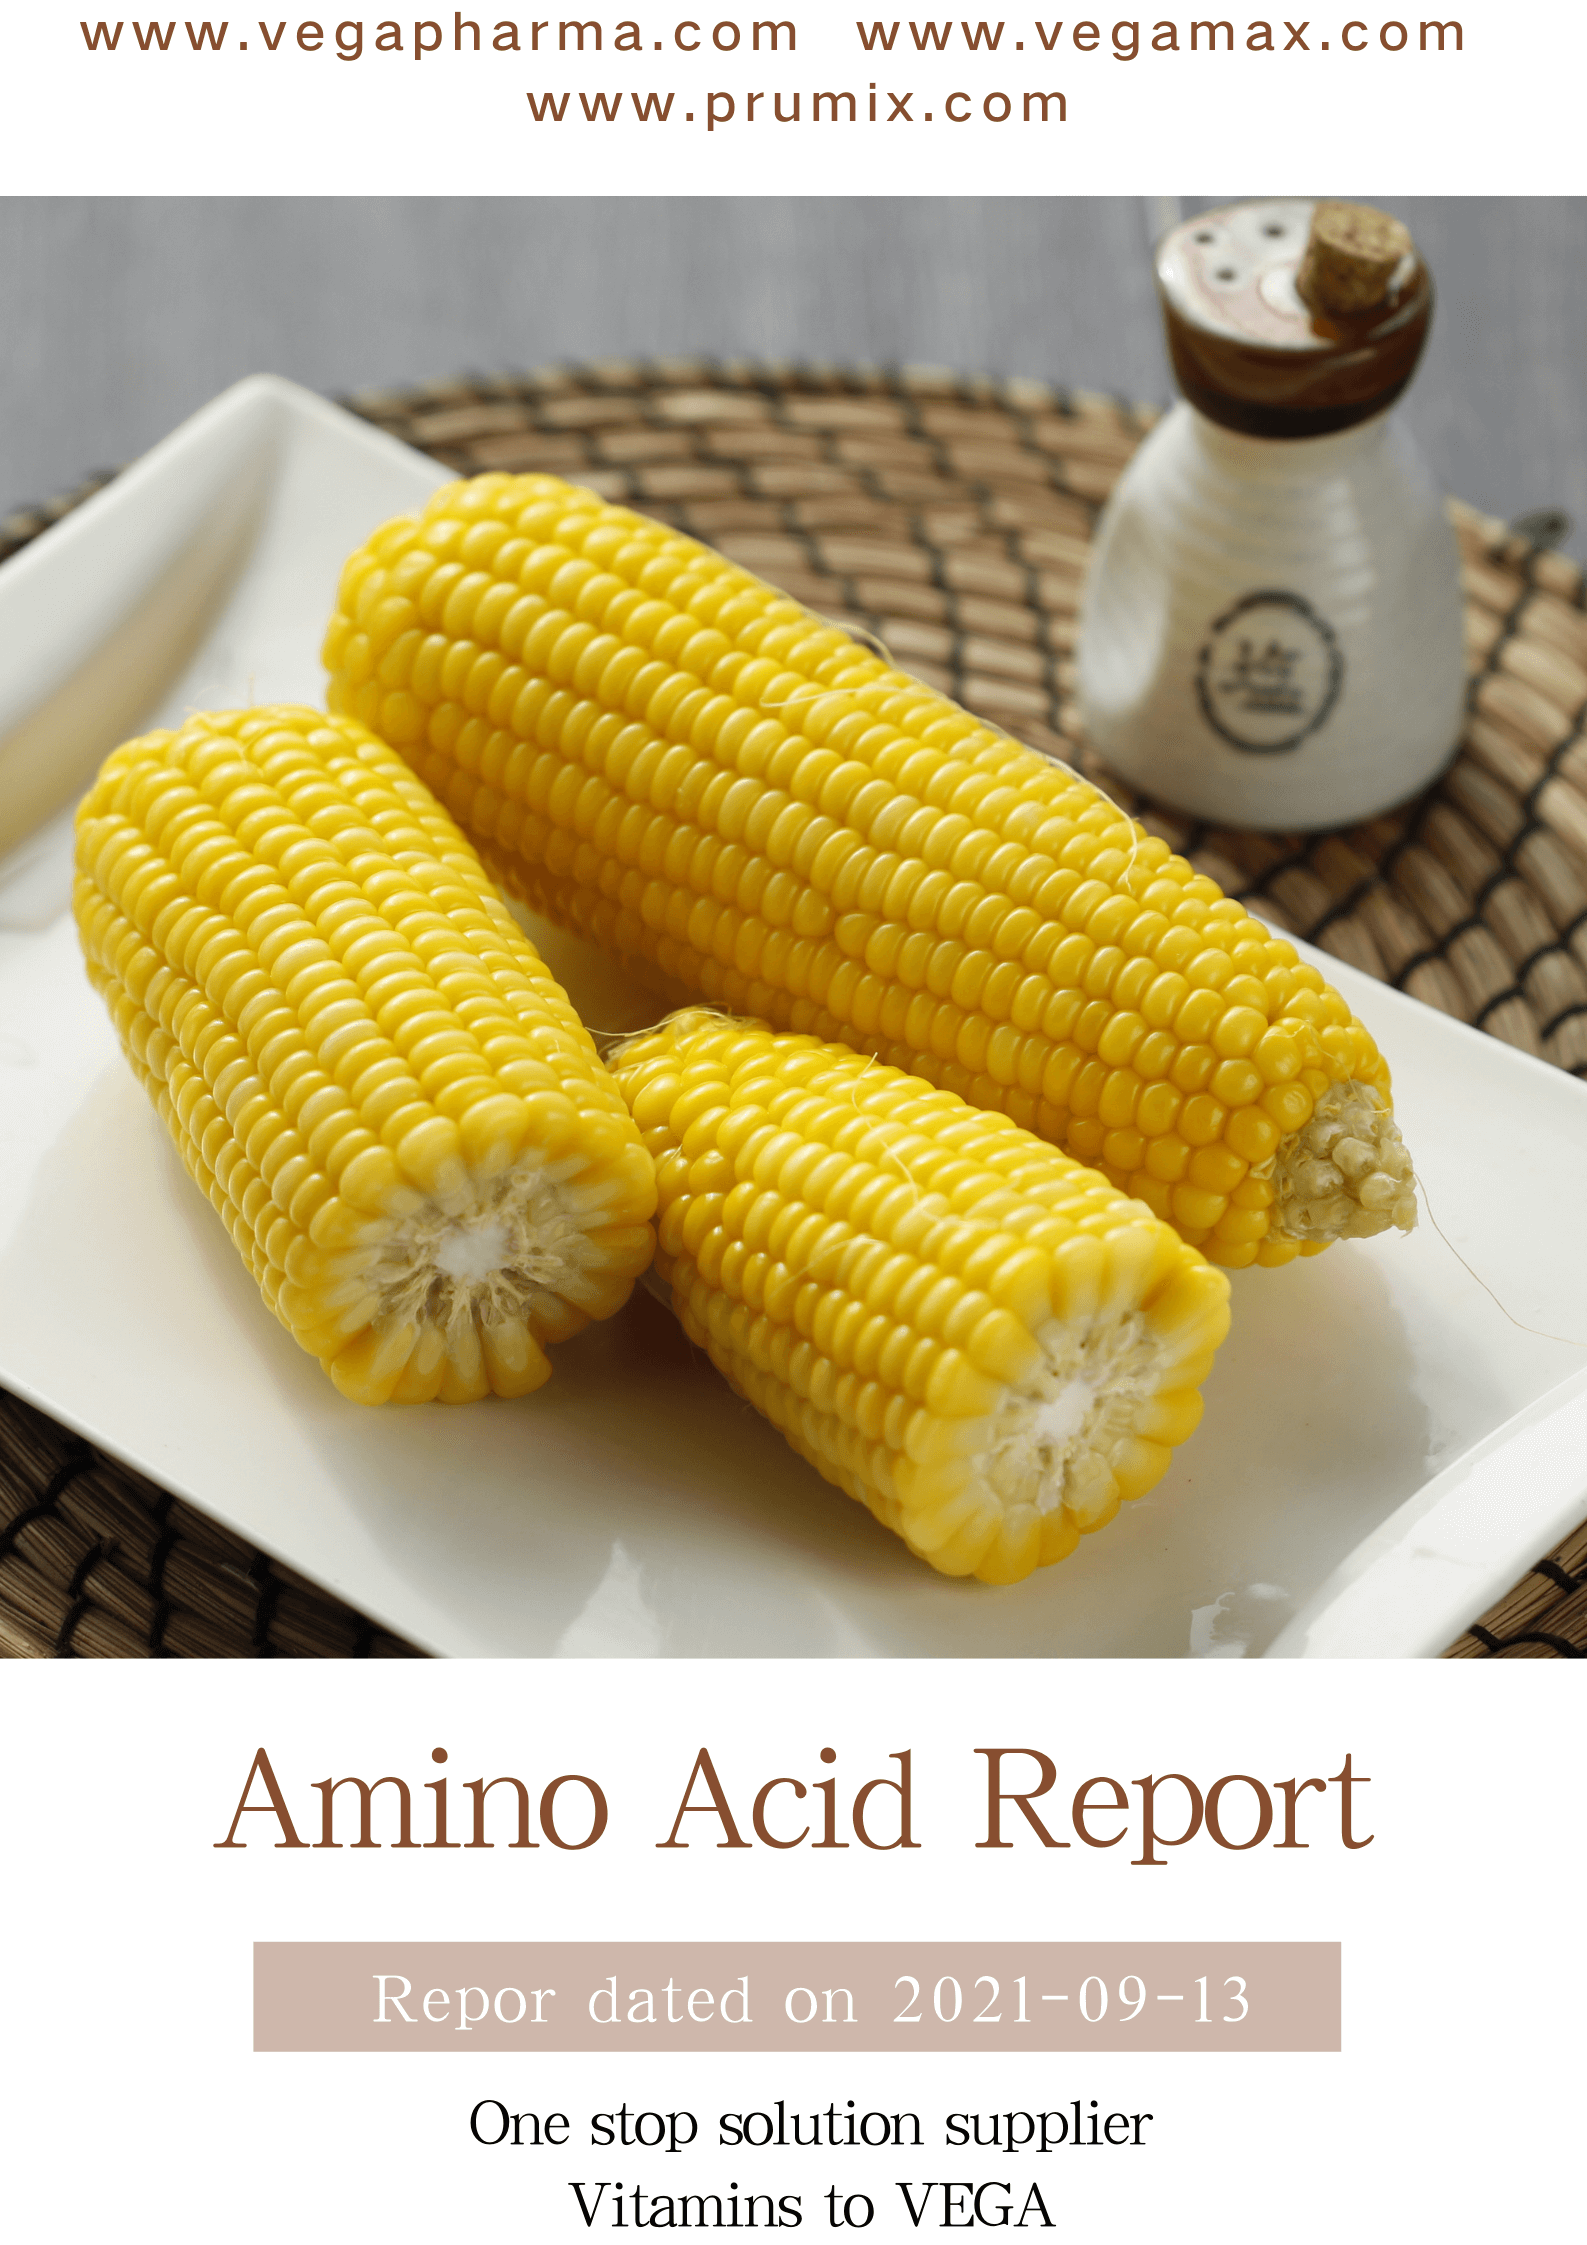 Amino acid report (1).png